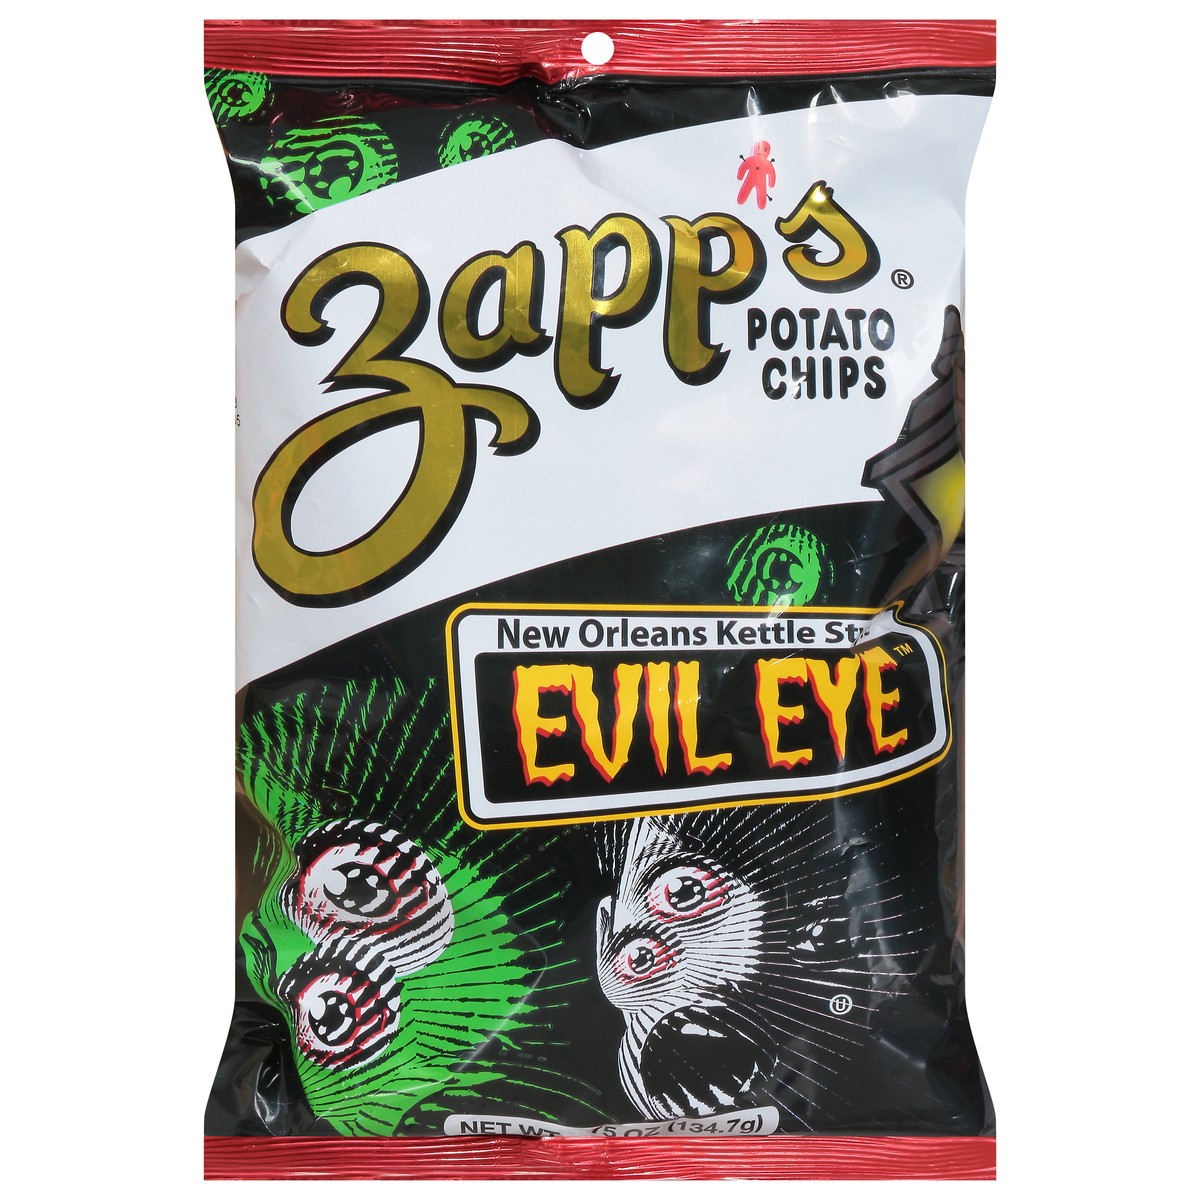 slide 11 of 11, Zapps Potato Chips Evil Eye New Orleans Kettle Style Potato Chips, 4.7 oz